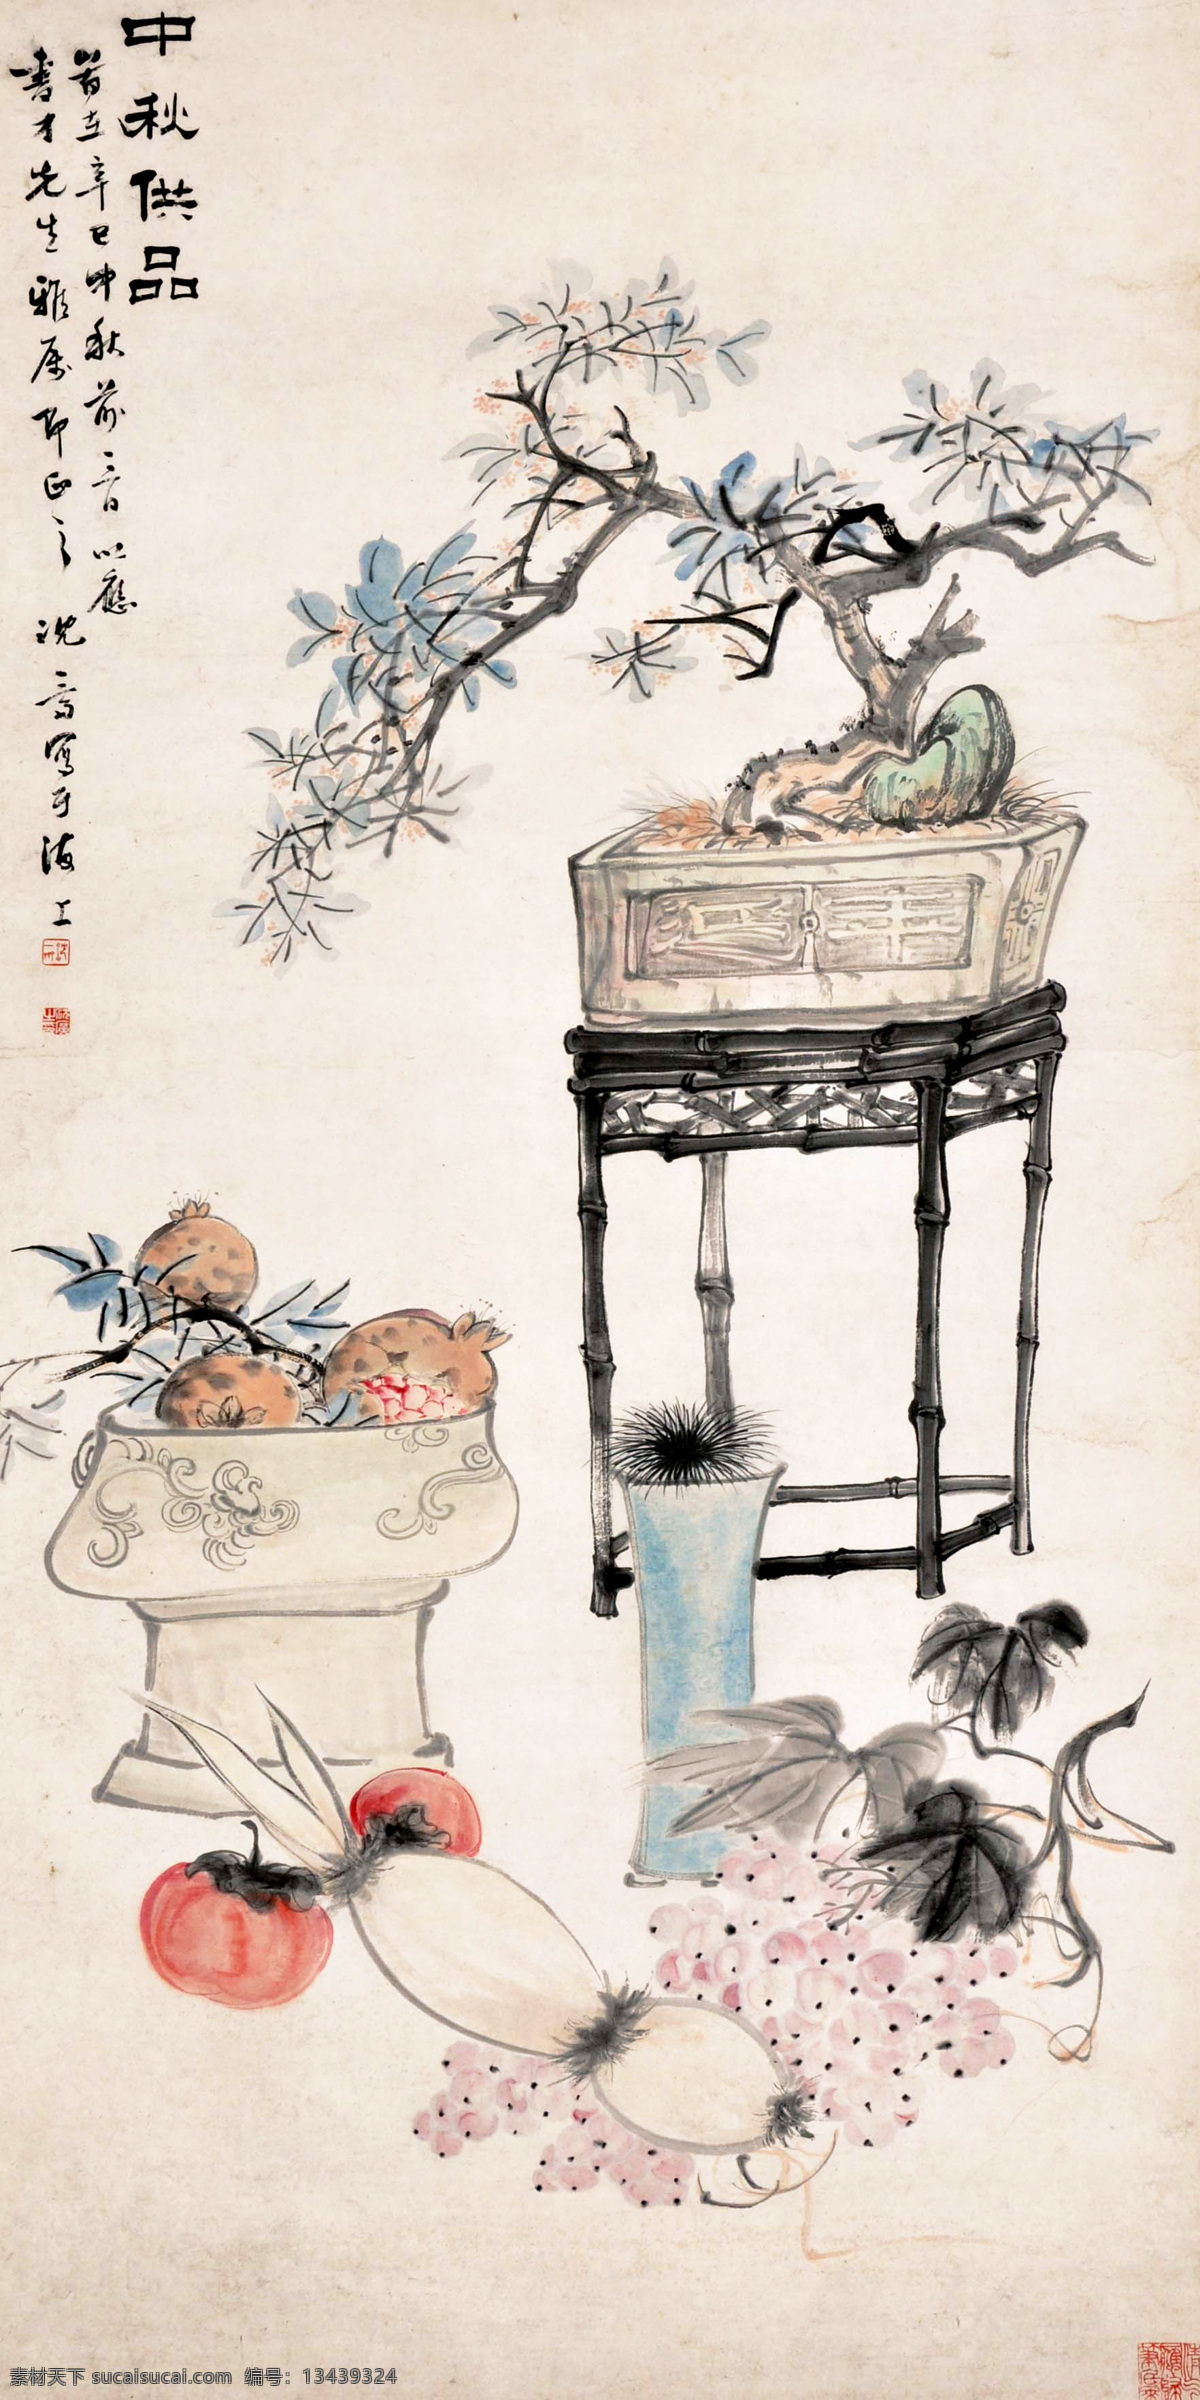 沉广 中秋供品 国画 中国画 传统画 名家 绘画 艺术 文化艺术 绘画书法